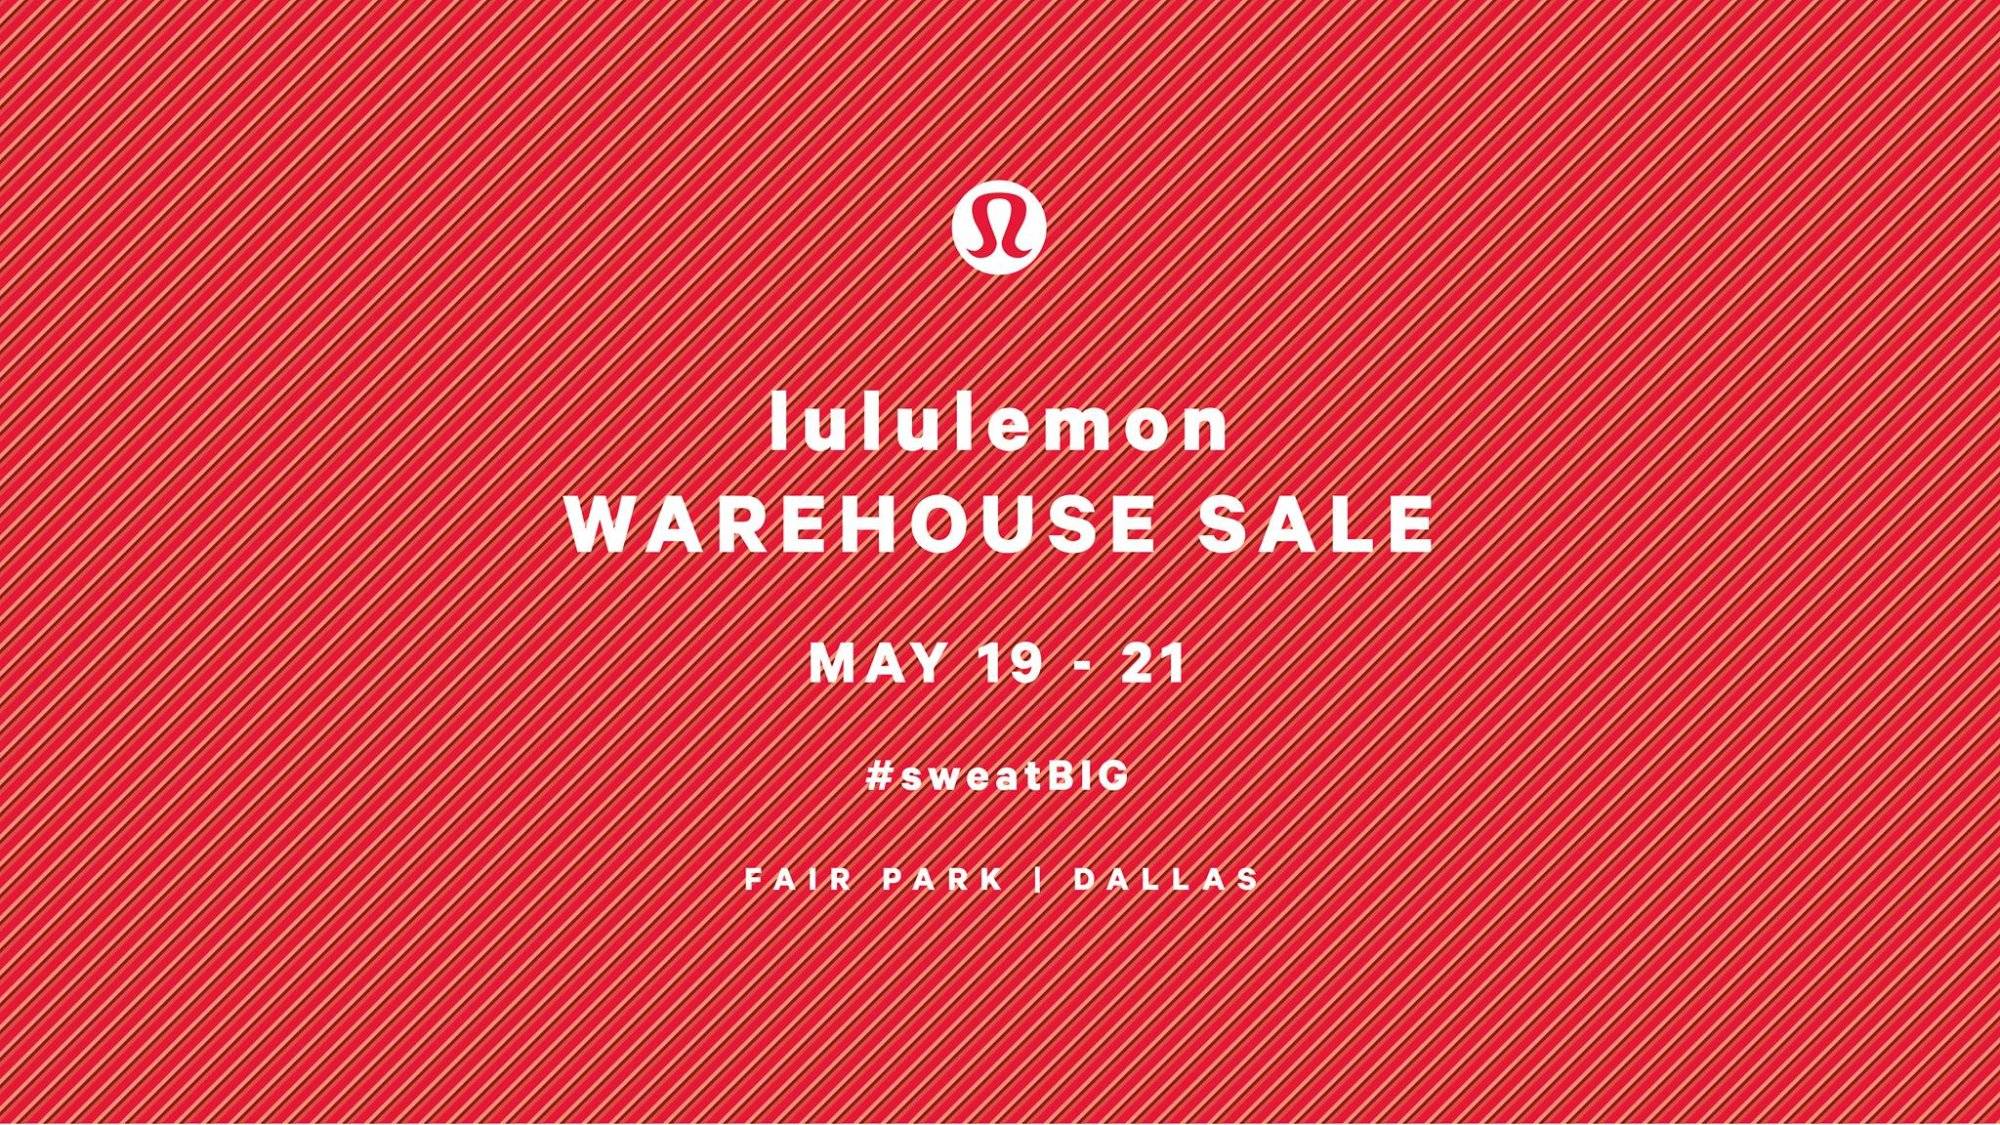 lululemon warehouse sale 2018 locations